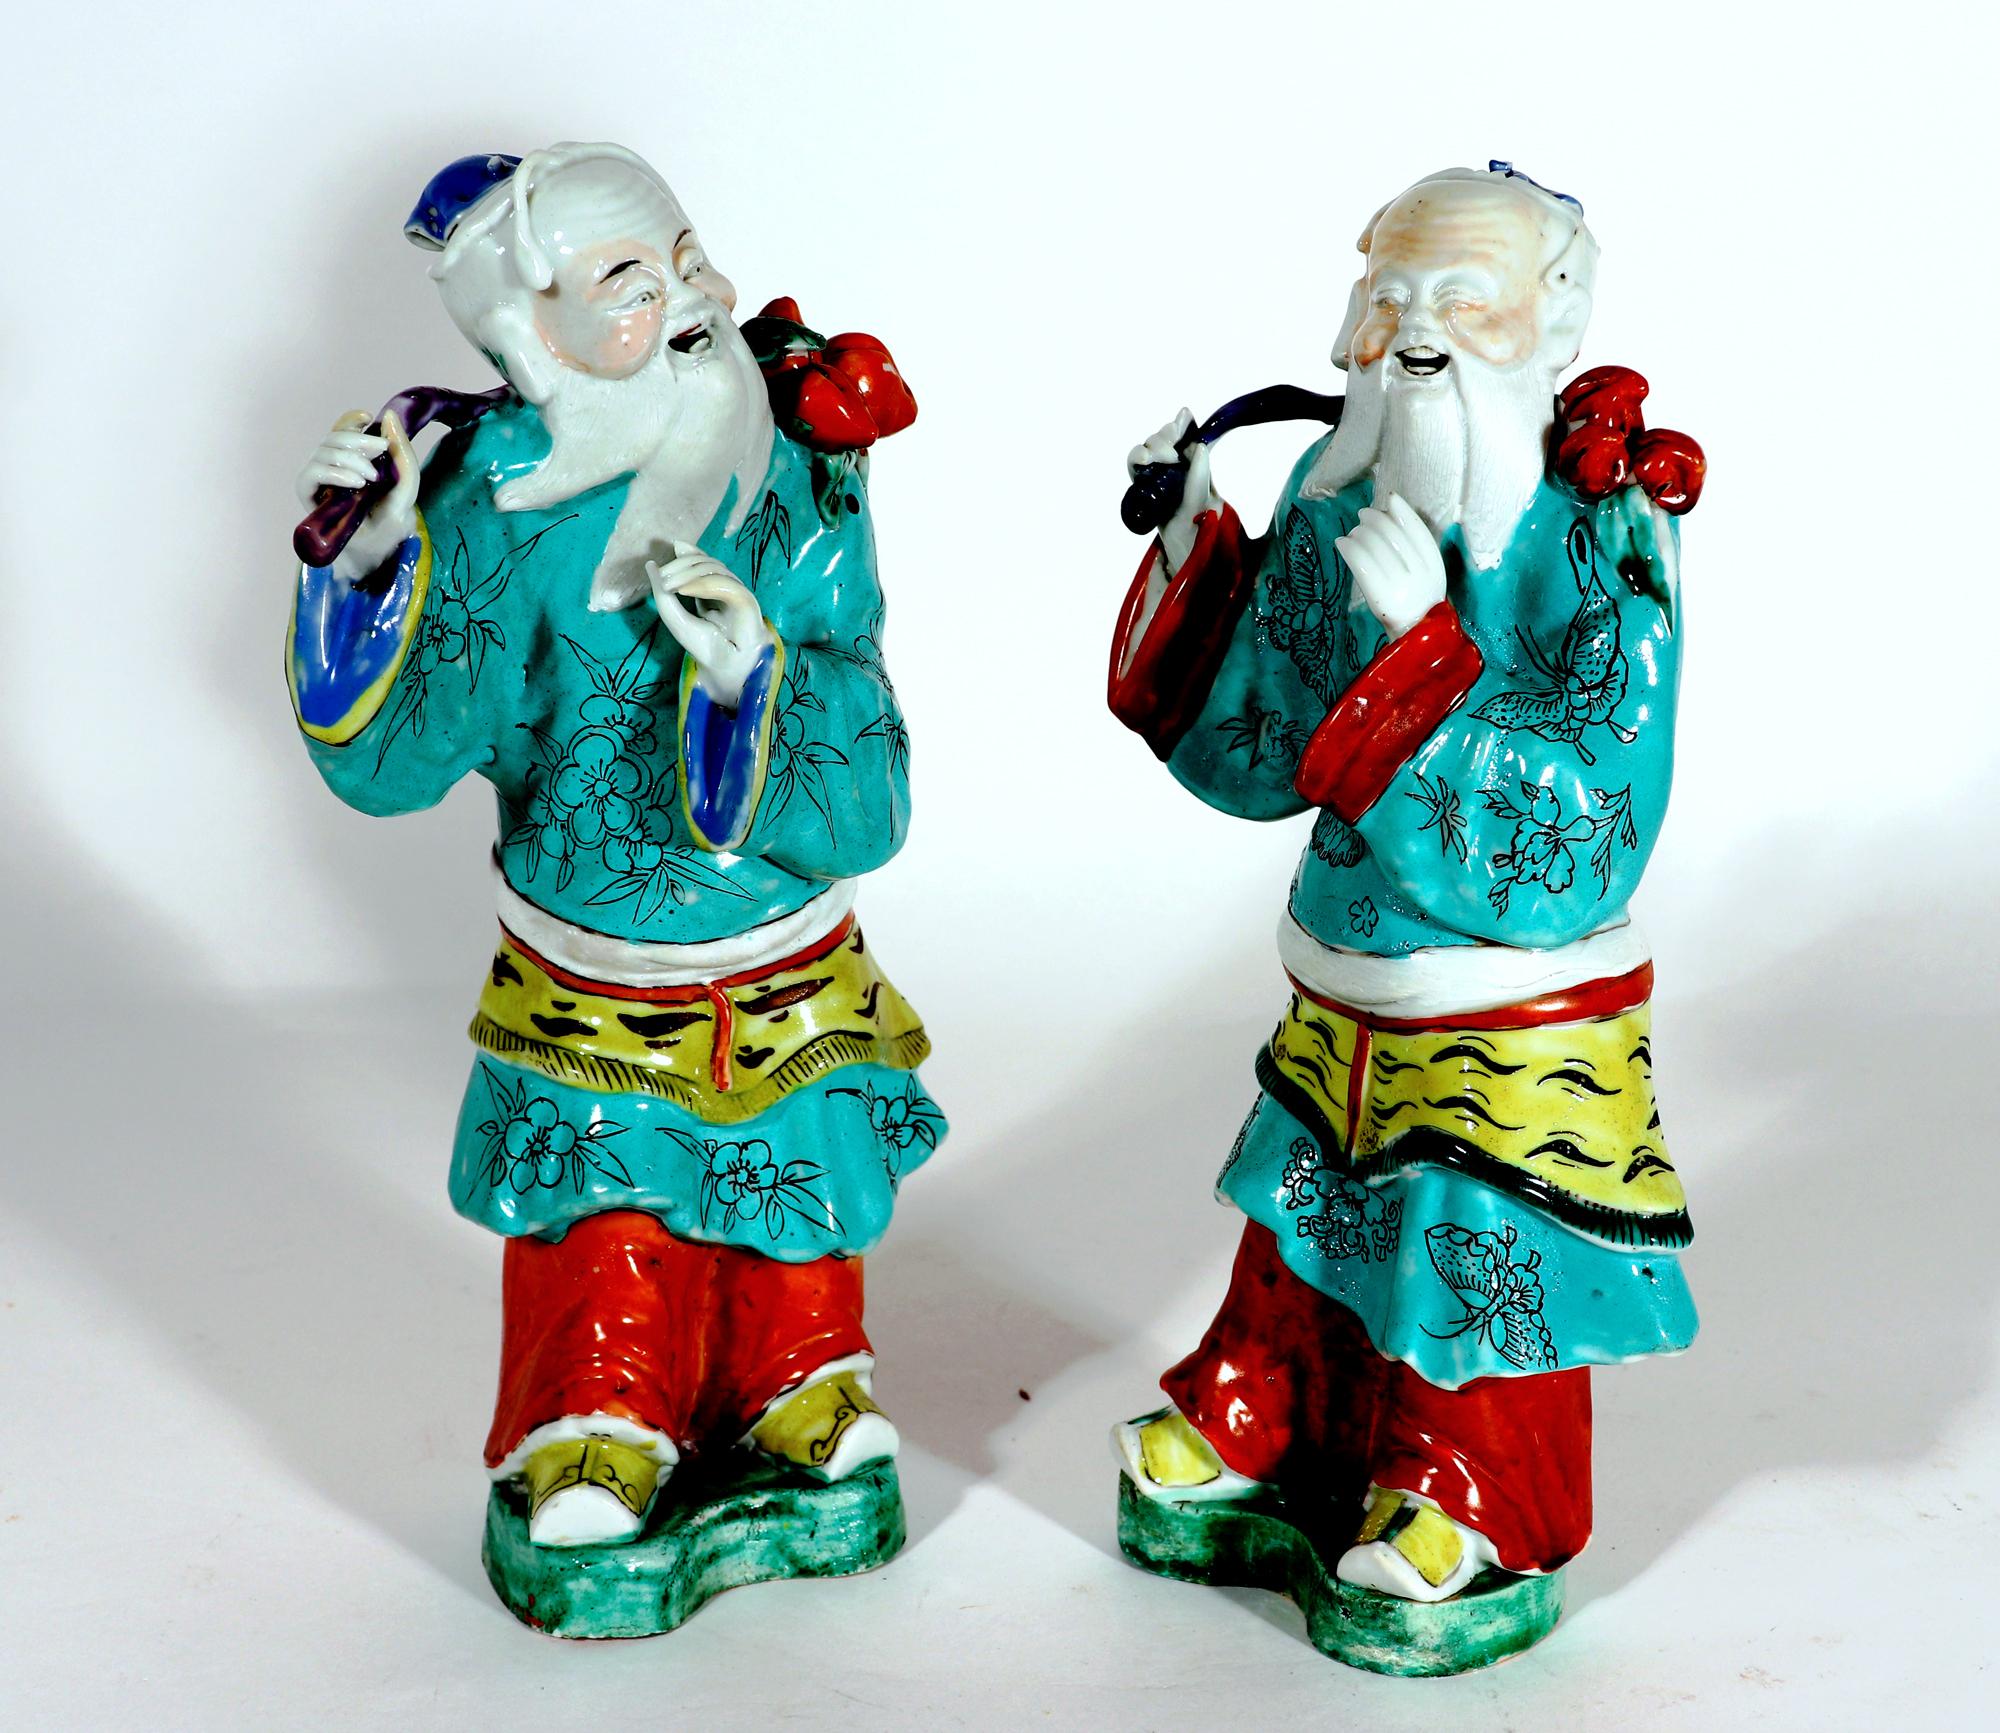 Chinesisches Exportporzellan große mythische Figuren,
Wahrscheinlich von Shouxing, Gott der Langlebigkeit
Um 1775

Die beiden chinesischen Exportfiguren stehen auf grün geformten Sockeln und sind, obwohl es sich um dasselbe Motiv handelt,